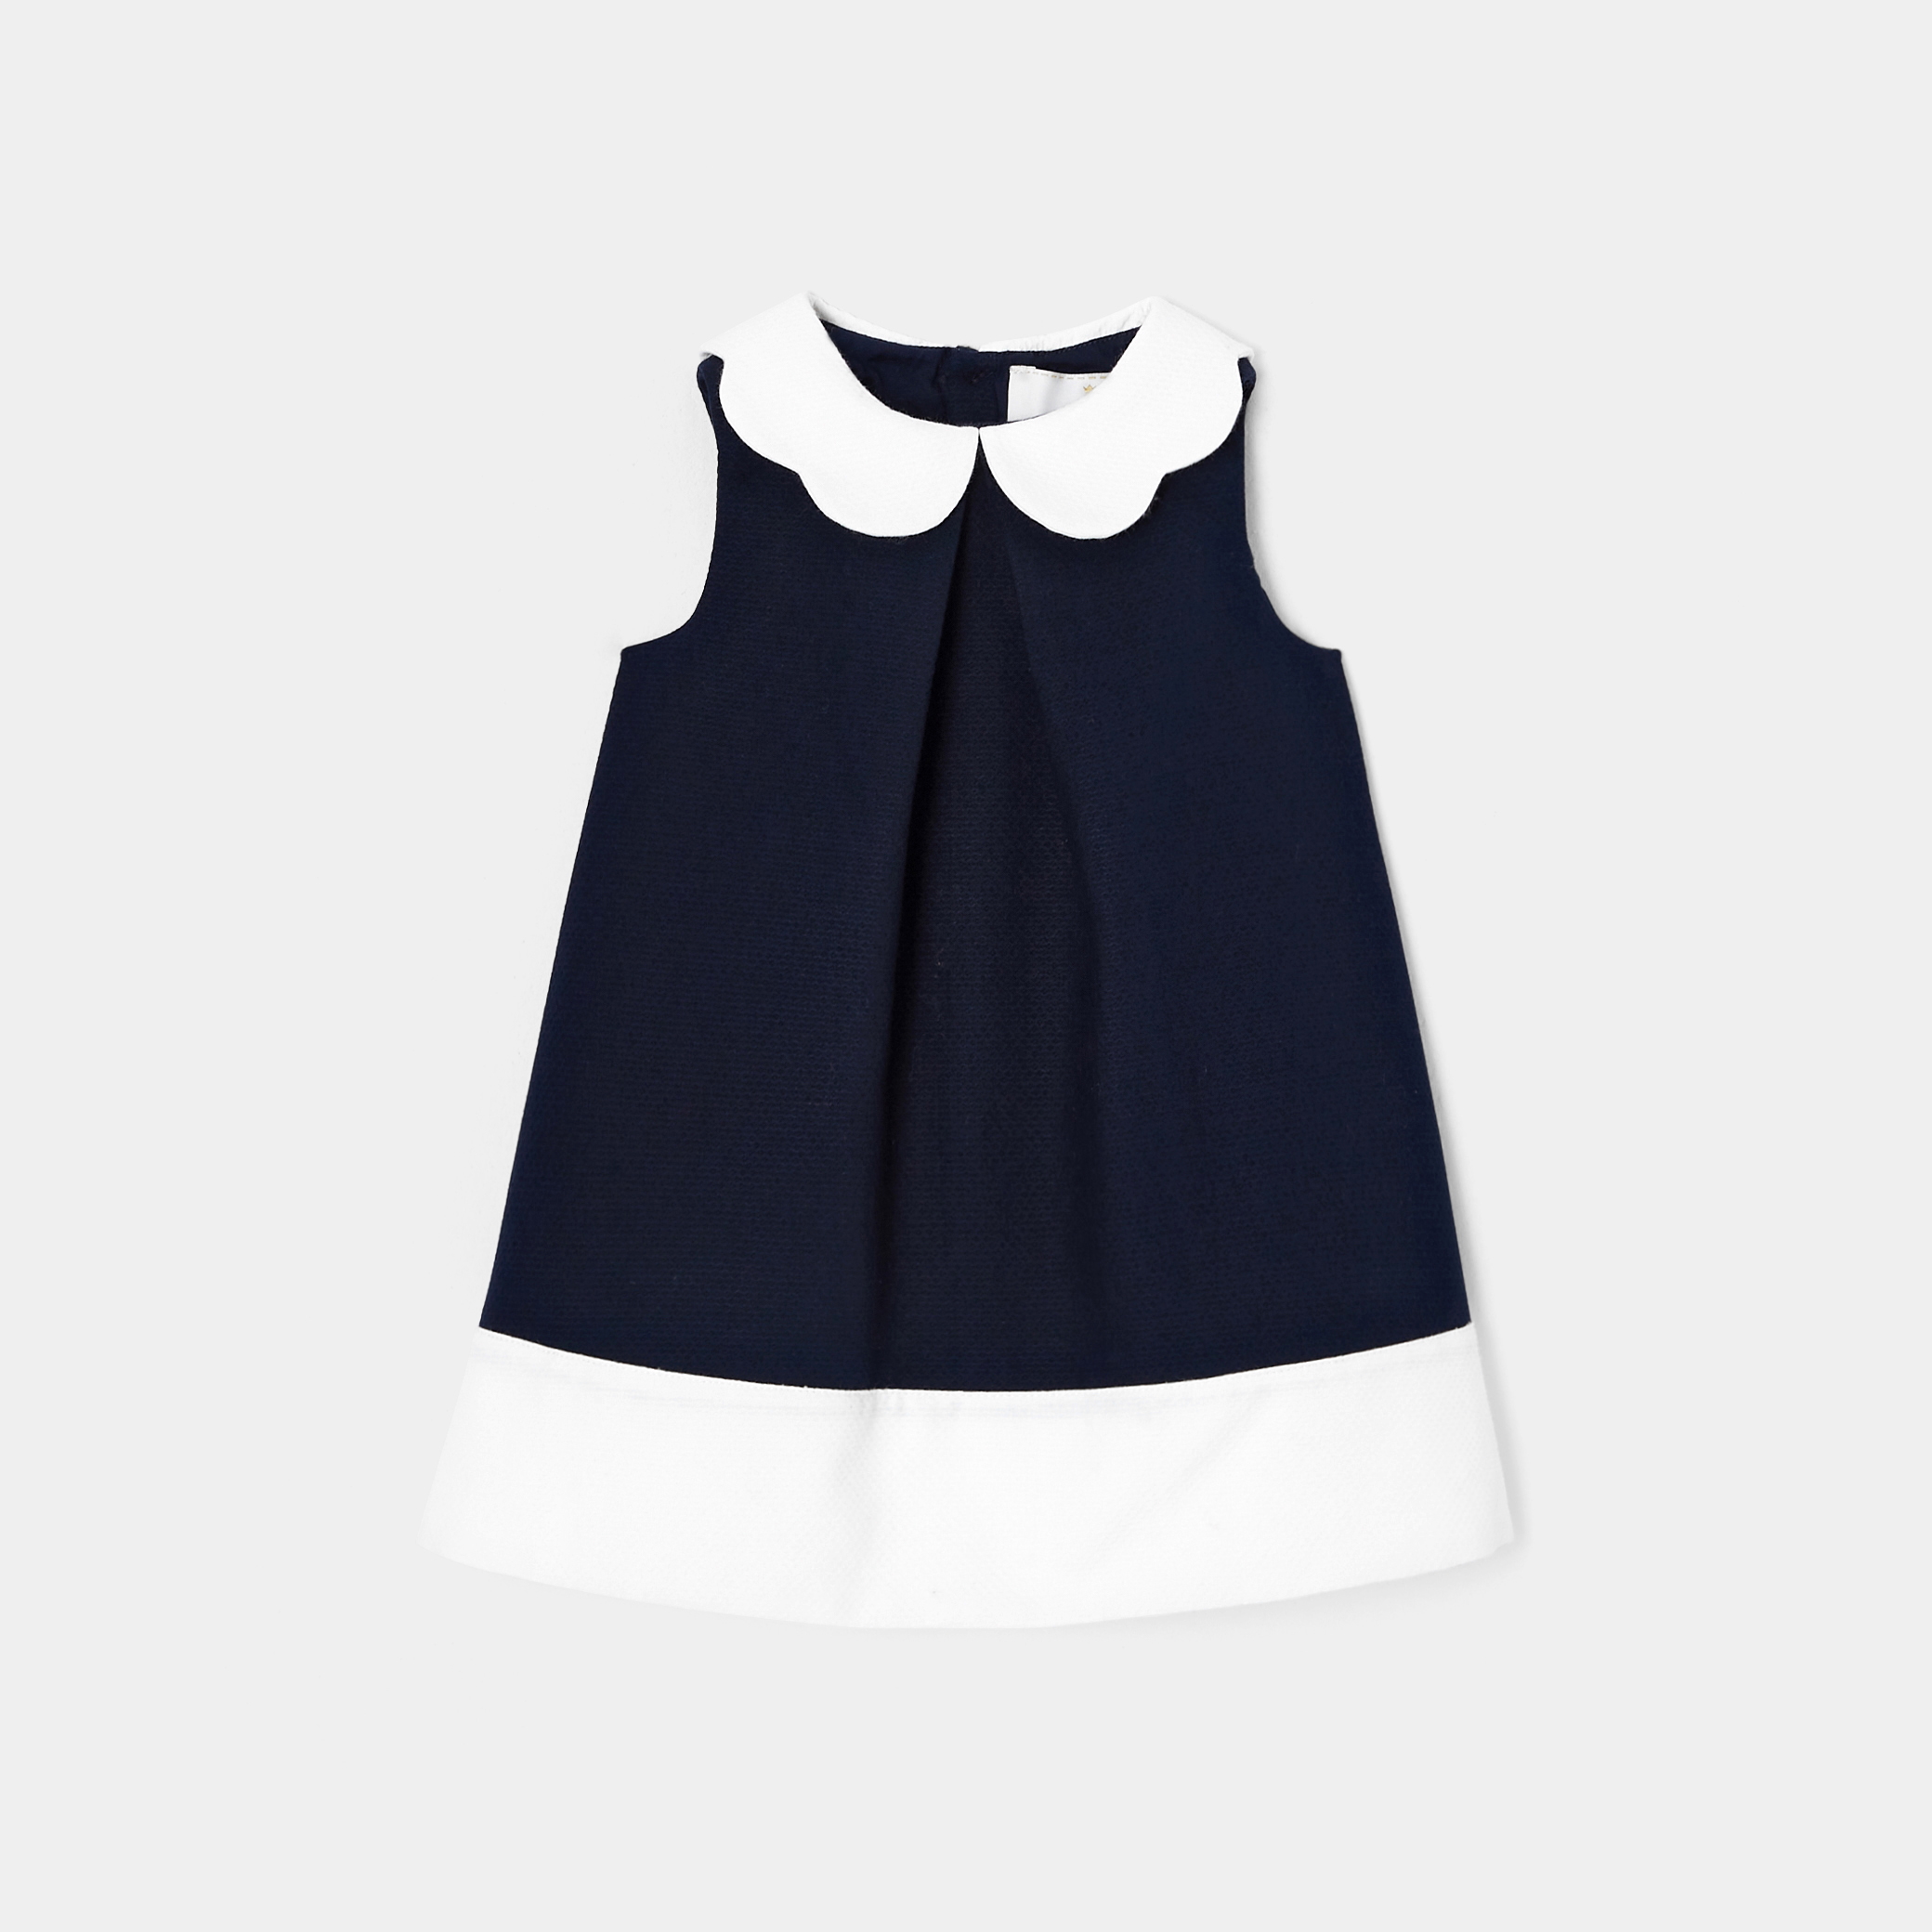 Toddler girl formal dress